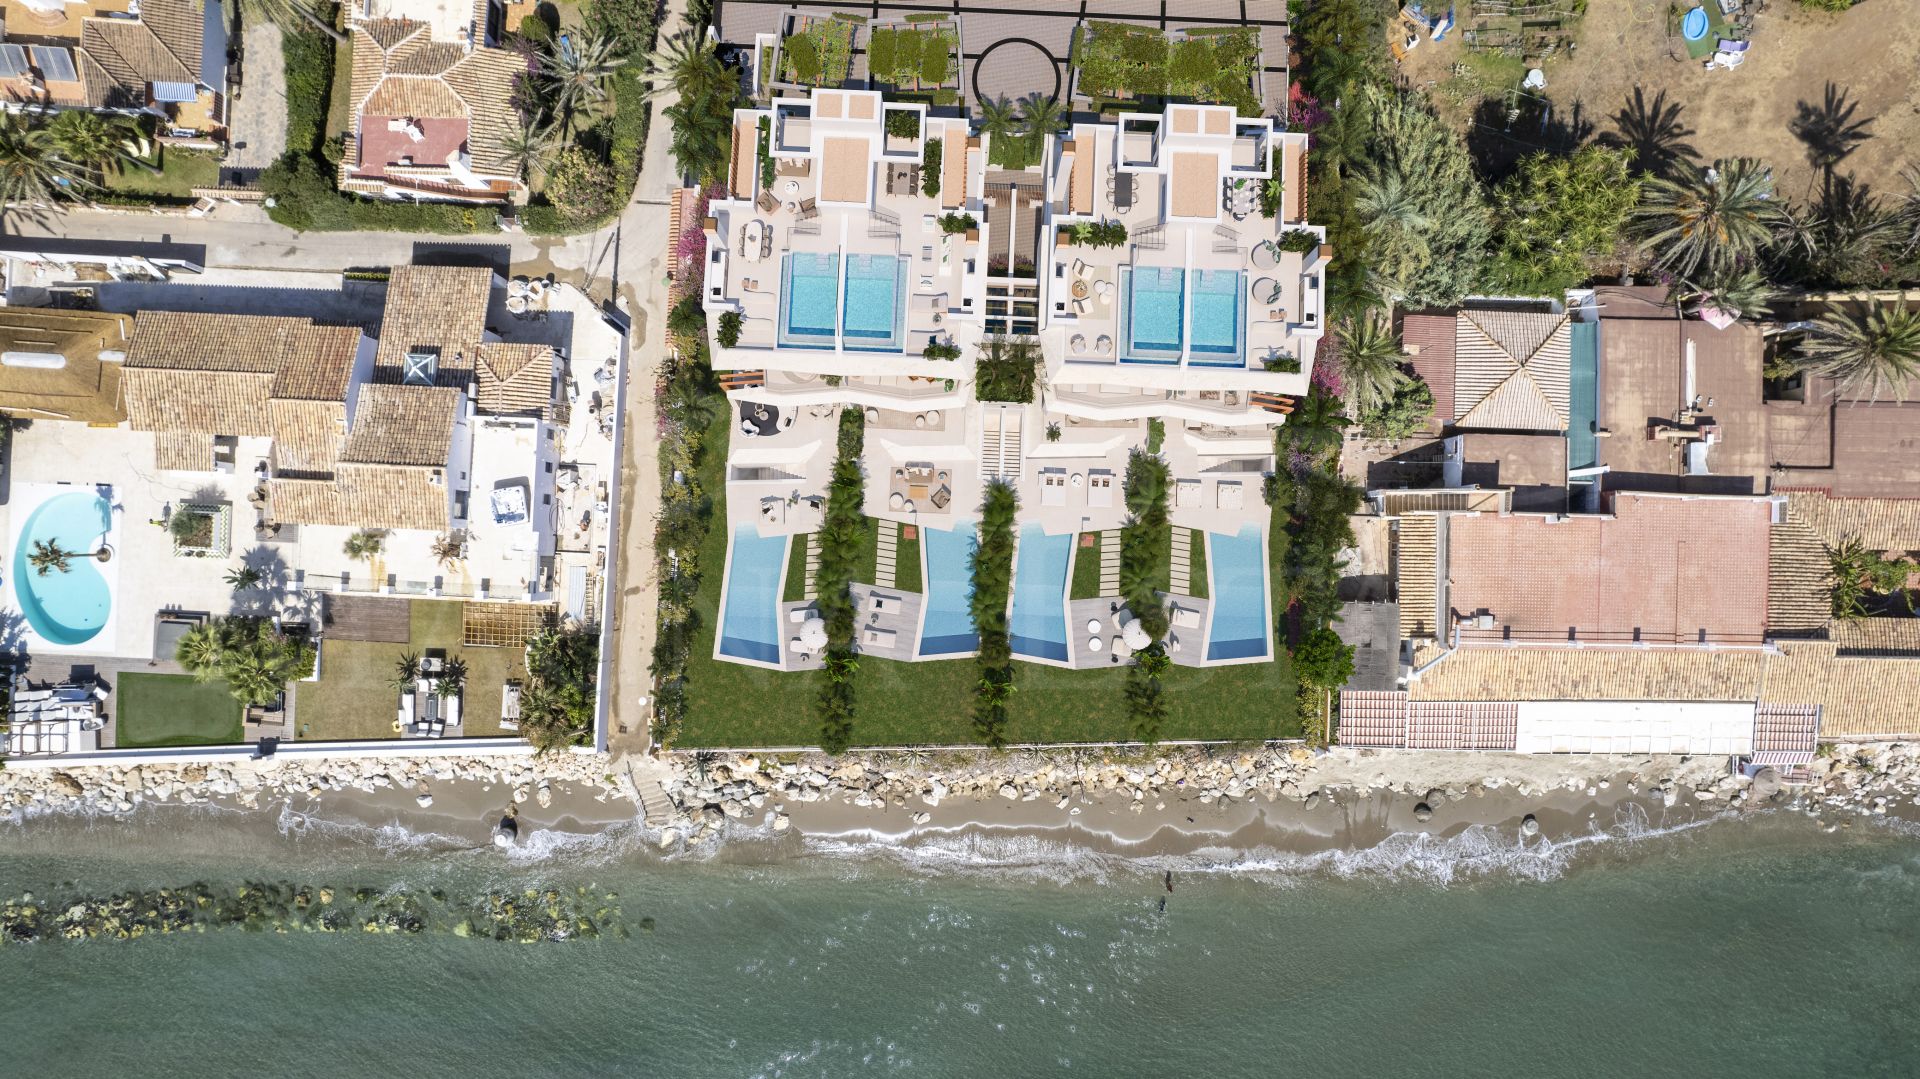 Brand new frontline beach villa in Marbella